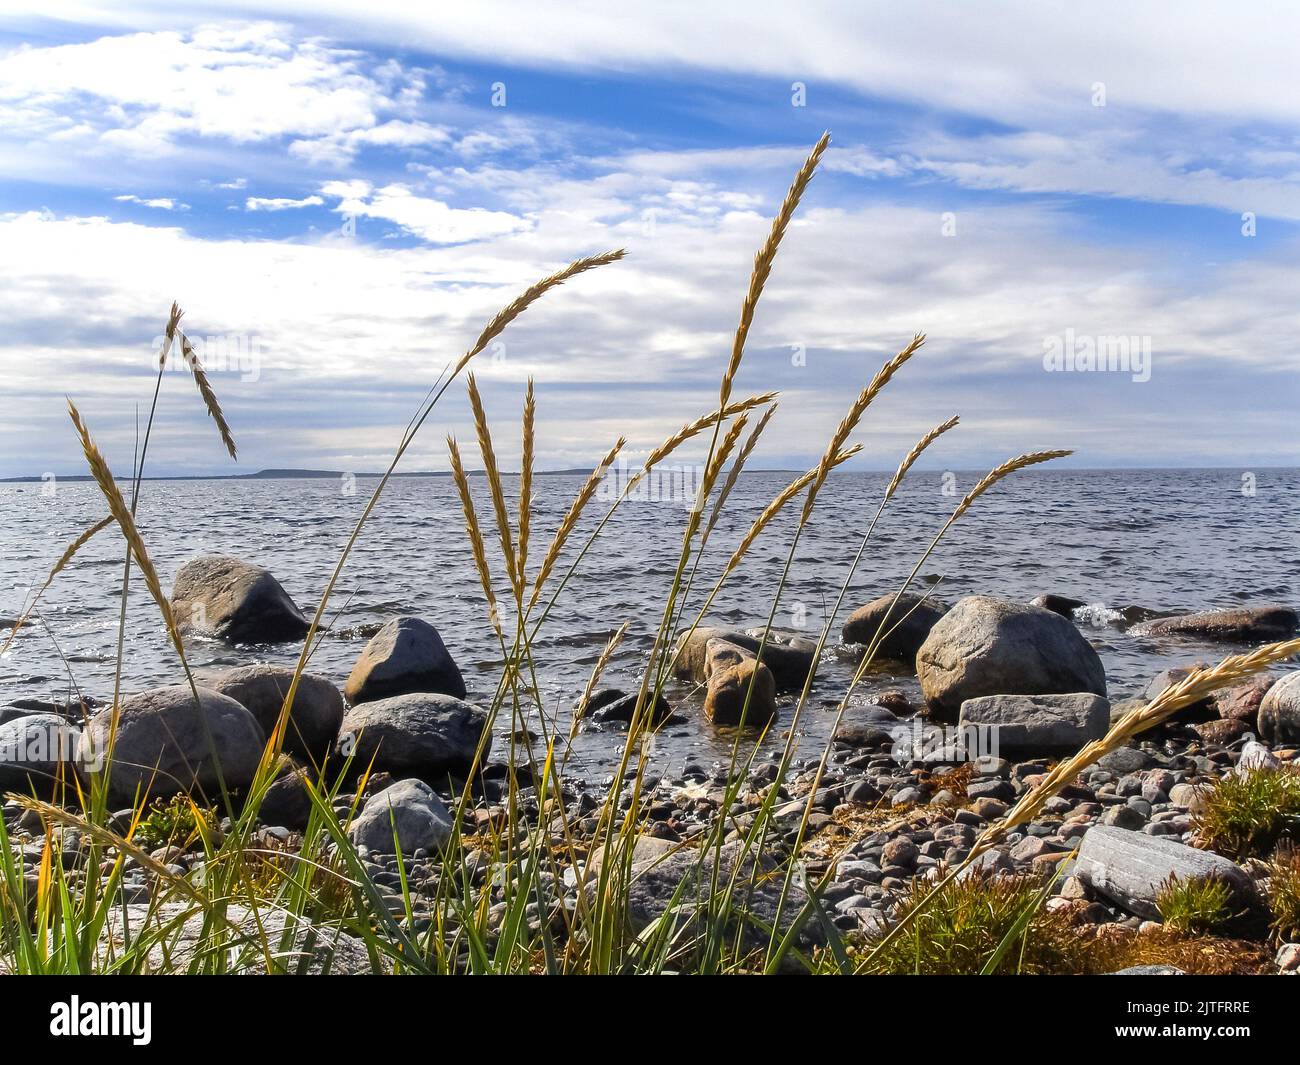 Gros rochers et épis de blé mûrs sur les rives de la mer du Nord. Paysage marin calme d'une plage rocheuse lors d'une chaude journée ensoleillée. Banque D'Images